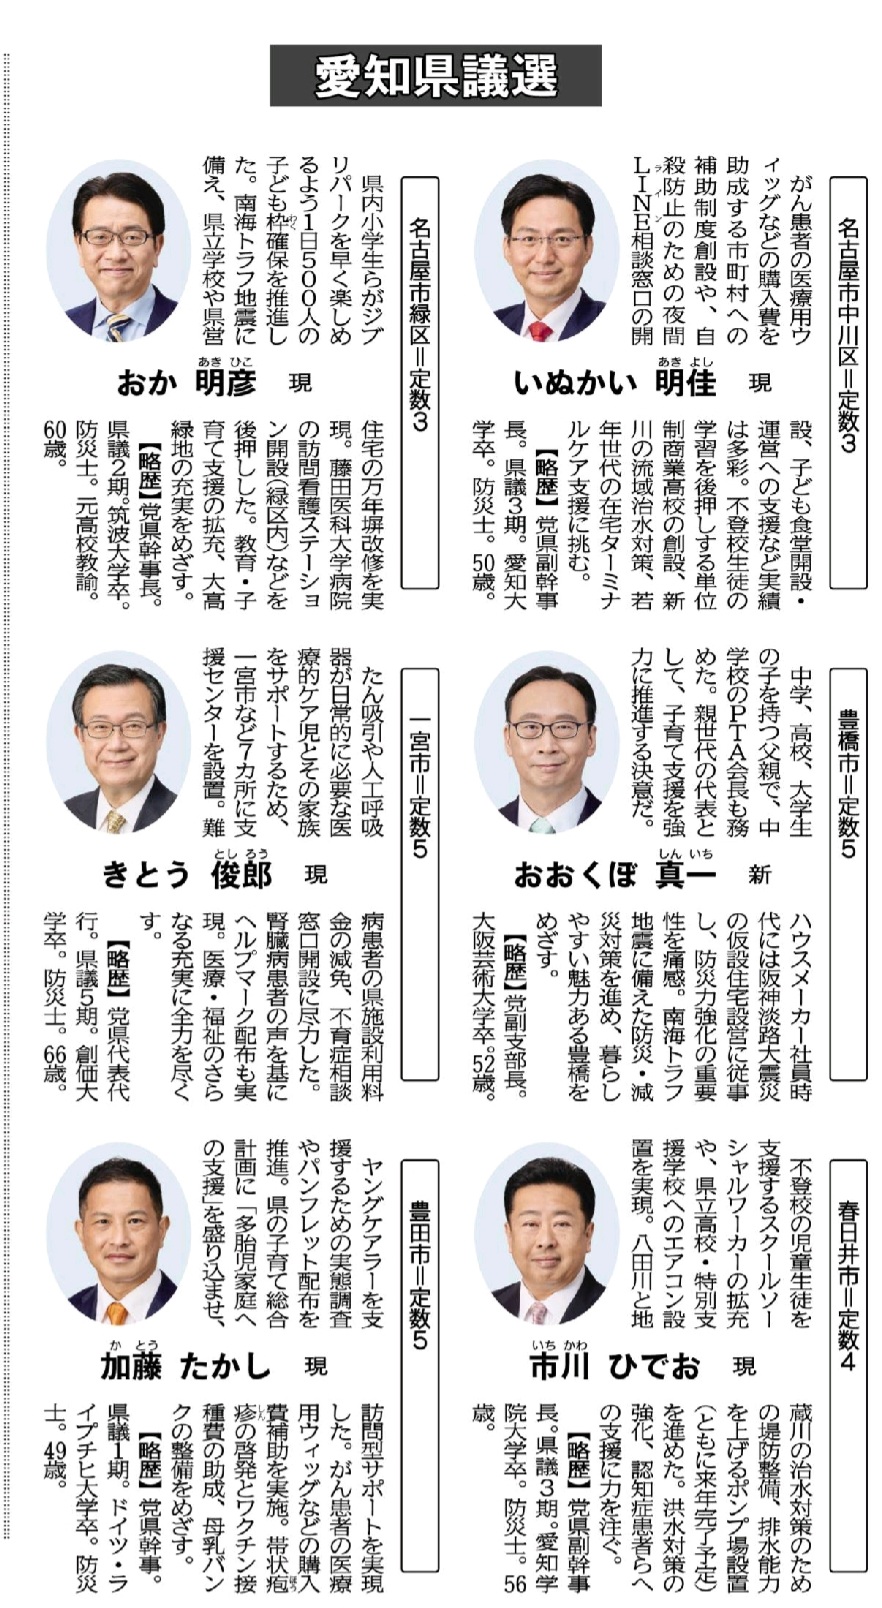 愛知県議選の予定候補のプロフィール